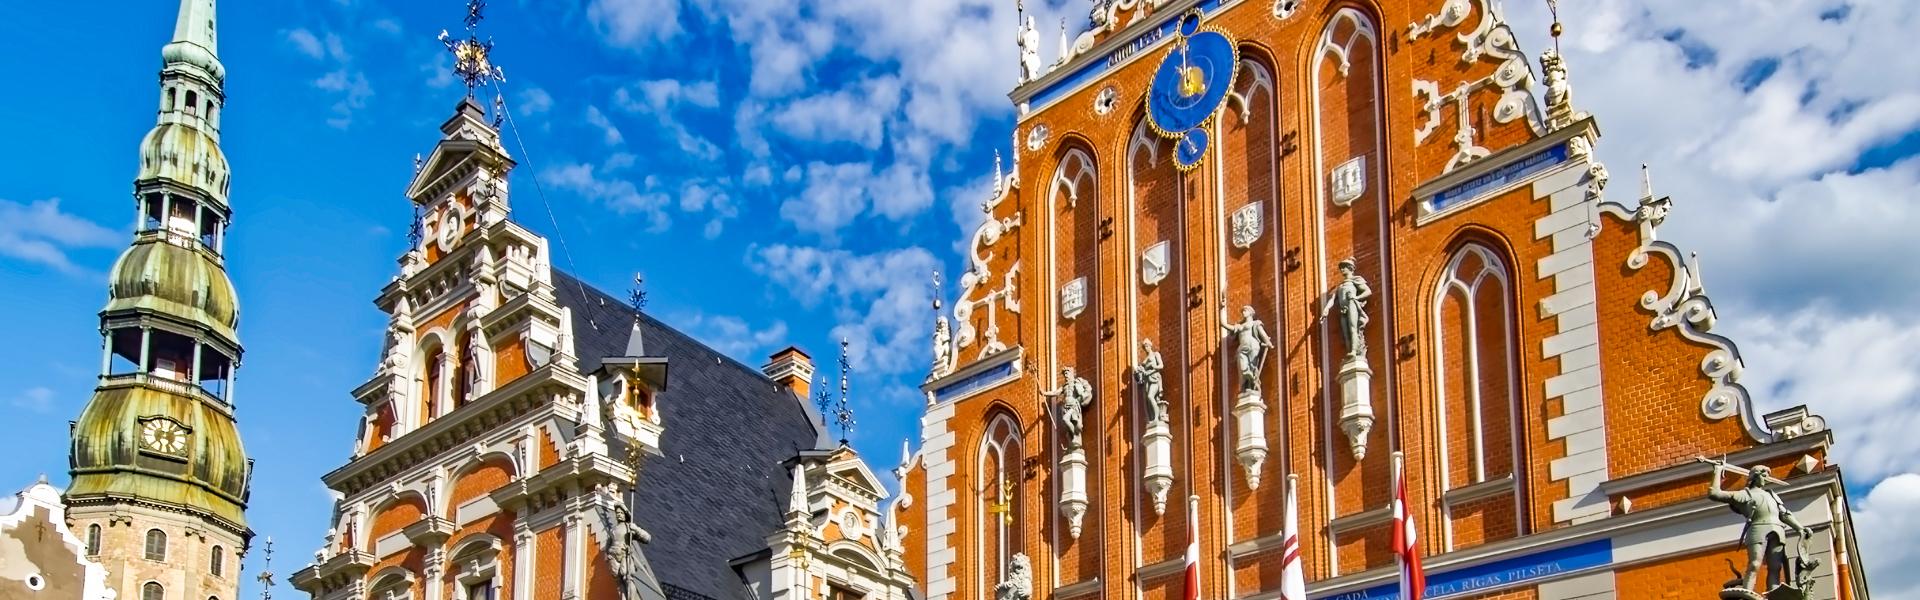 Schwarzhupterhaus und Petrikirche in Riga |  Makalu, Pixabay / Chamleon